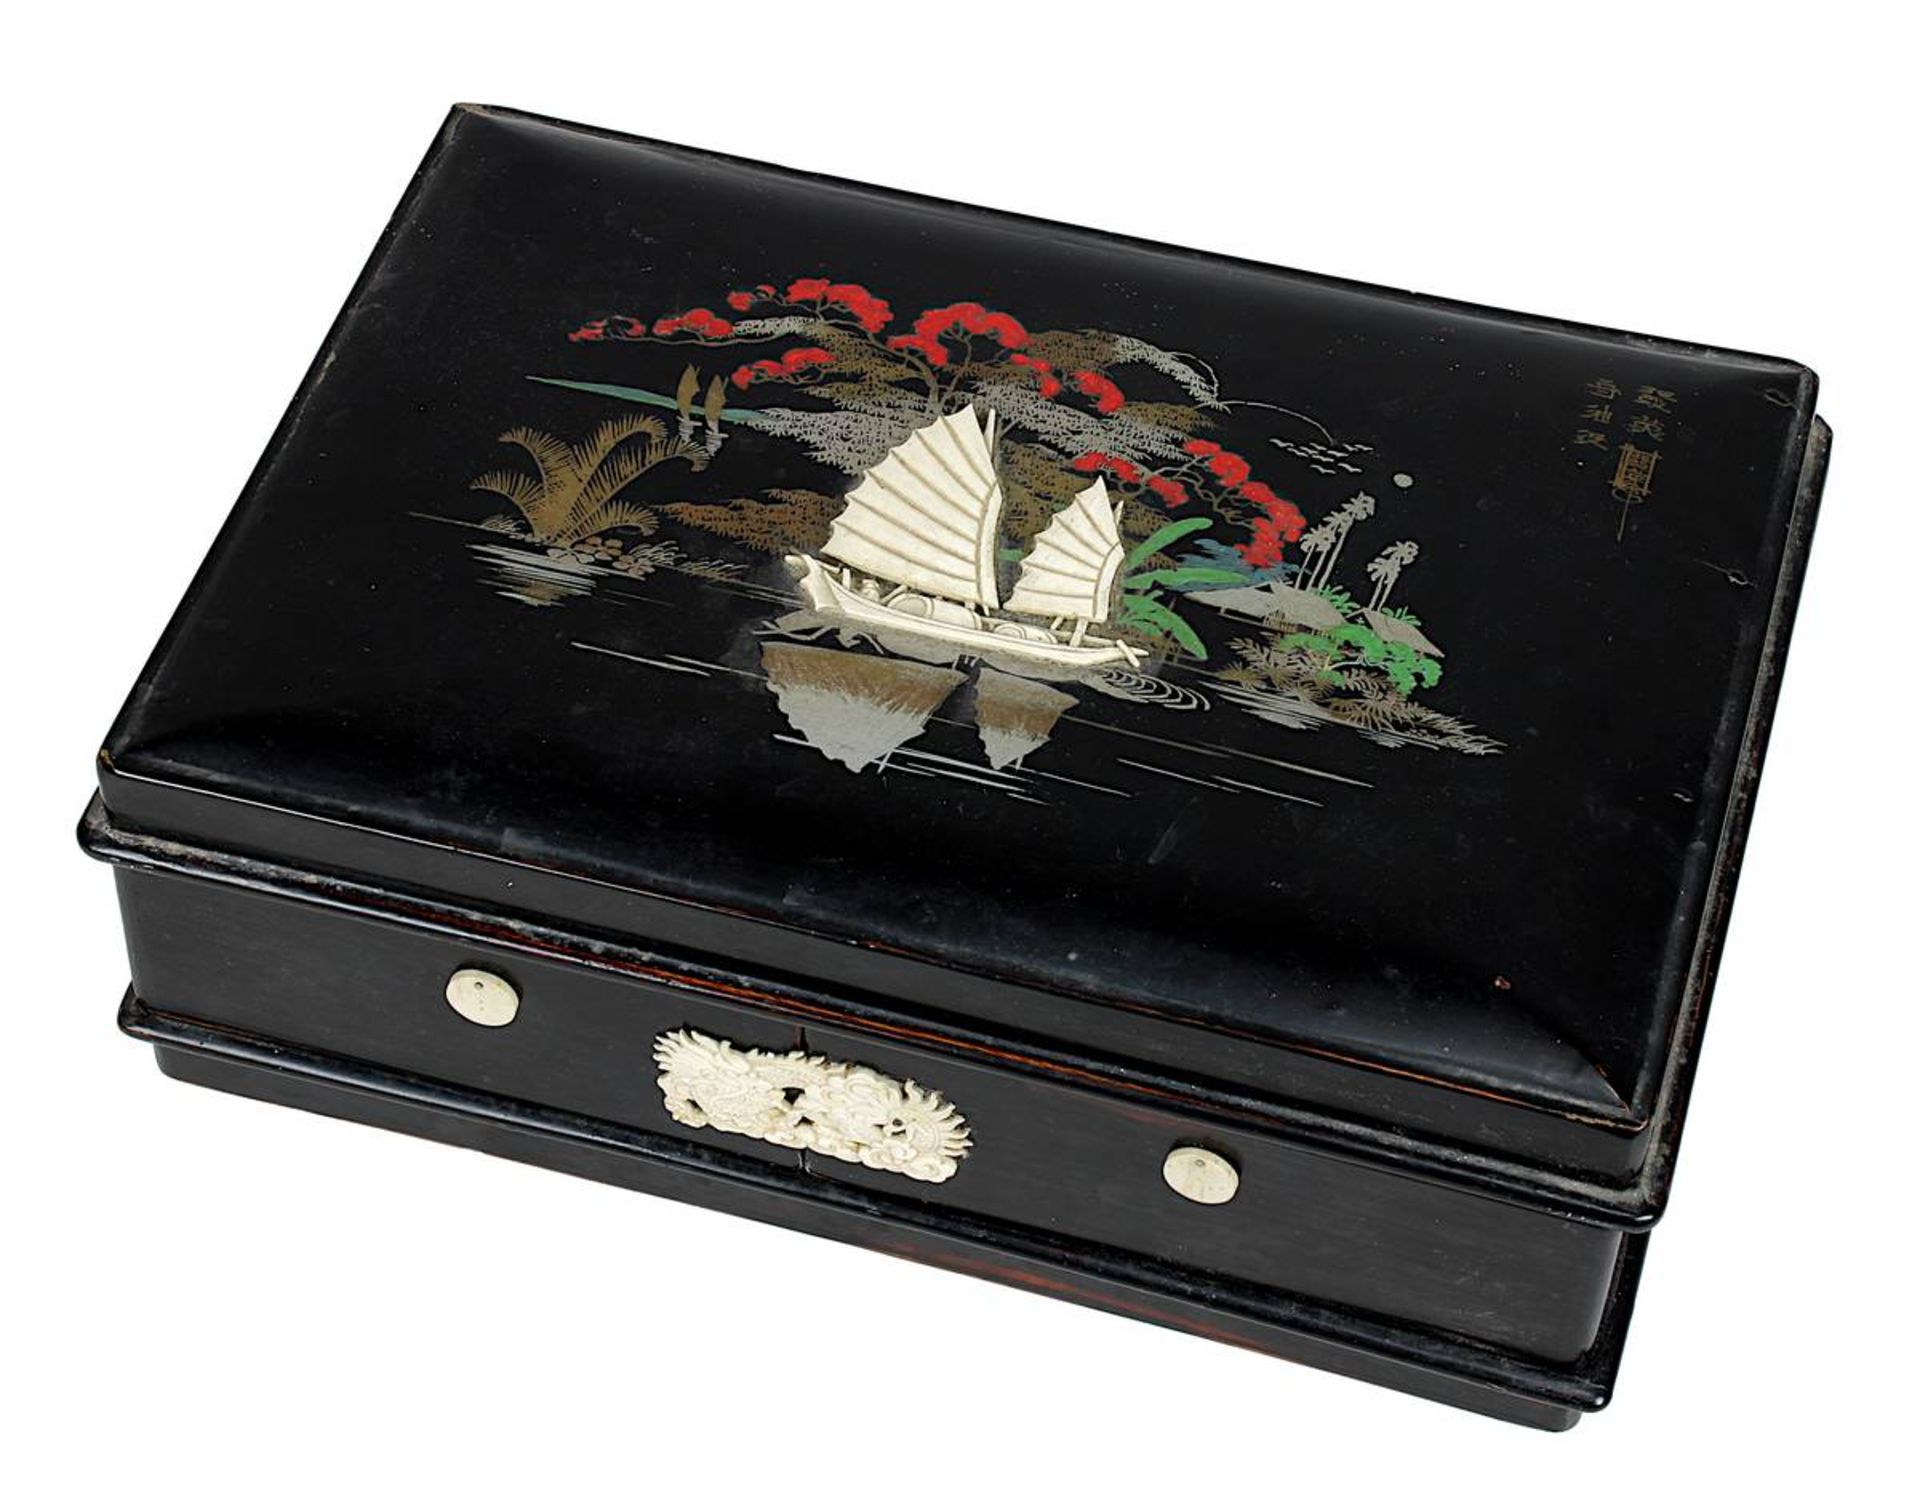 Lack-Schminkschatulle, China um 1900, schwarz lackiertes Holz, anscharnierter Deckel, mit gemaltem F